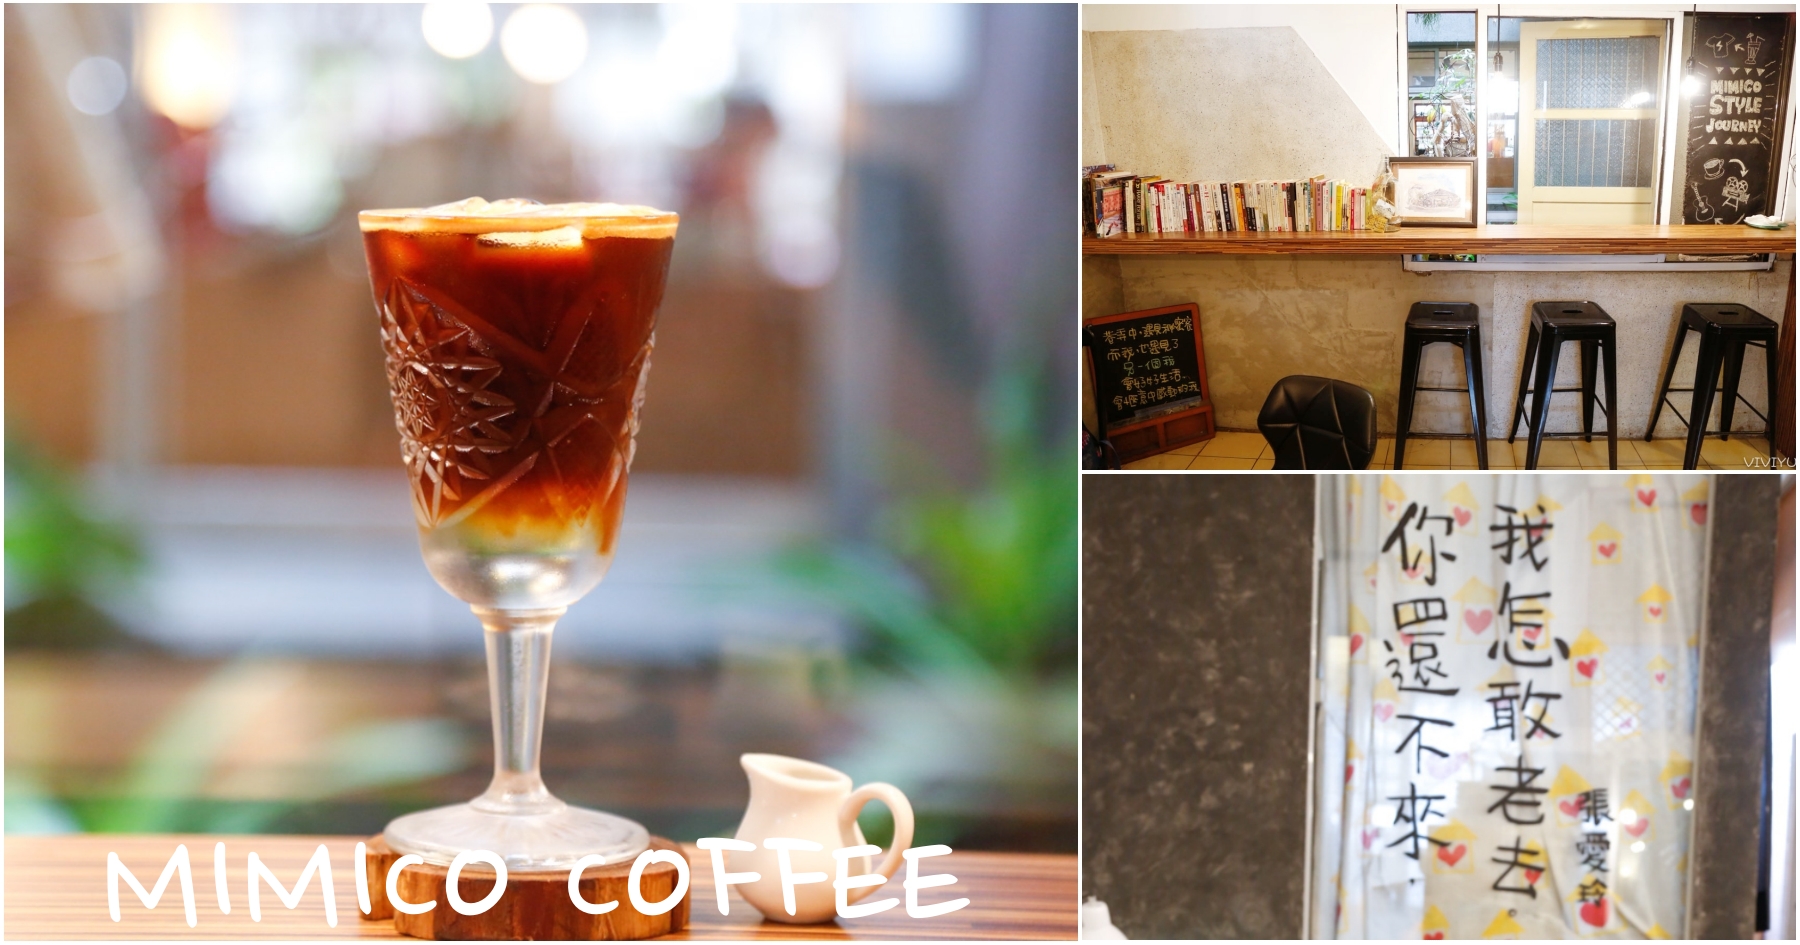 [嘉義美食]MIMICO COFFEE 秘密客咖啡館|老宅保留中庭引進自然光線~氣氛很好 @VIVIYU小世界